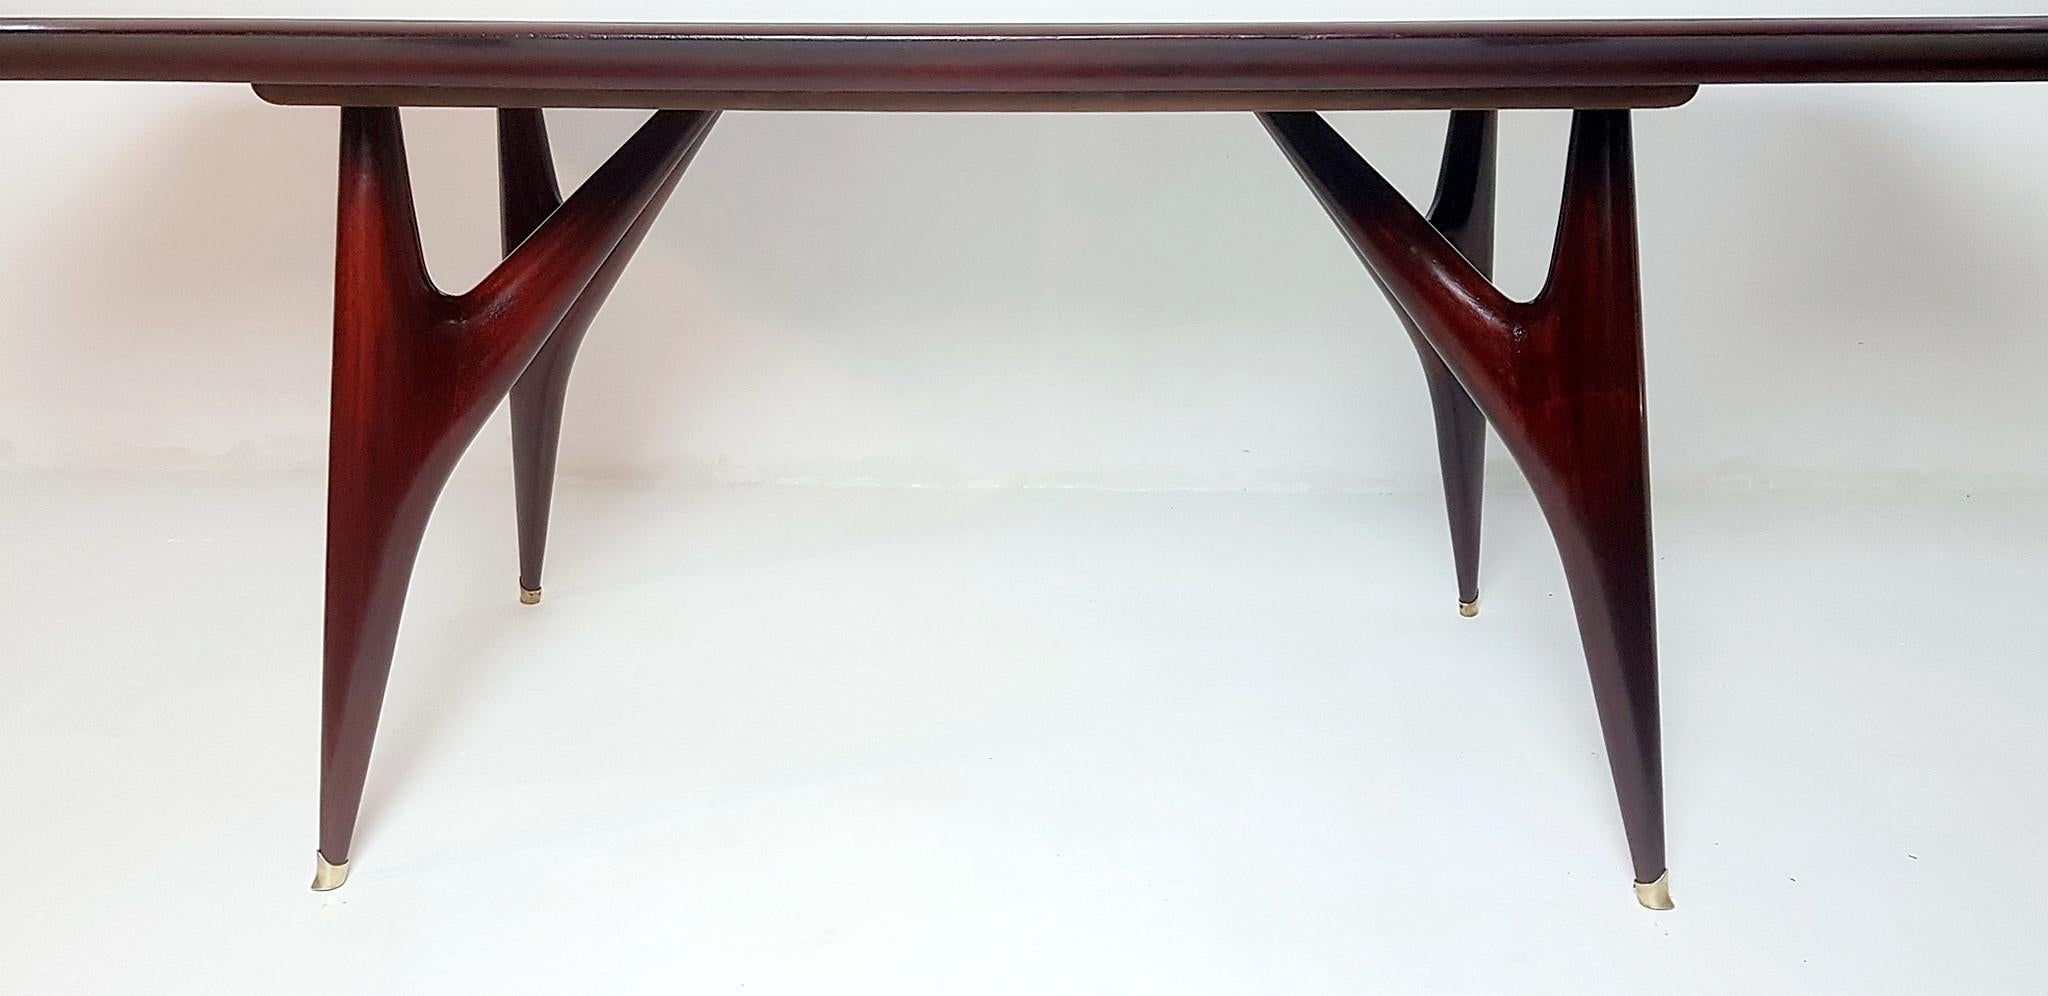 Fabelhafter großer, professionell restaurierter Esstisch, der in den 1950er Jahren in Italien hergestellt wurde. Der Sockel ist aus Nussbaumholz, die Beine haben Messingkappen und die kantige Platte ist aus Glas mit einer hellgrünen/türkisfarbenen,